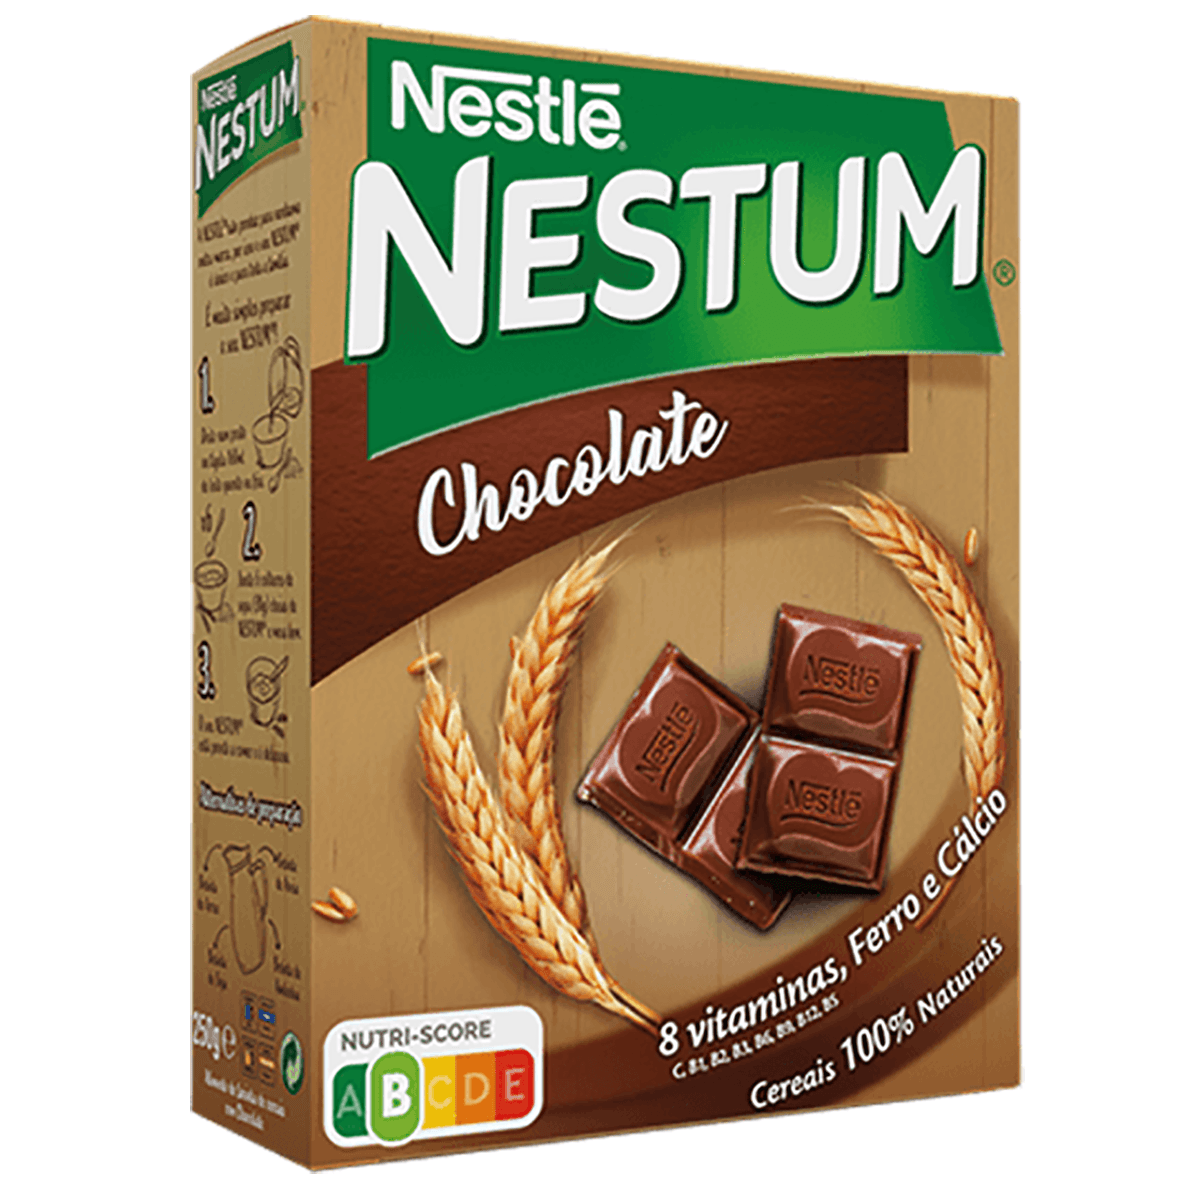 Nestle Nestum Chocolate 250g